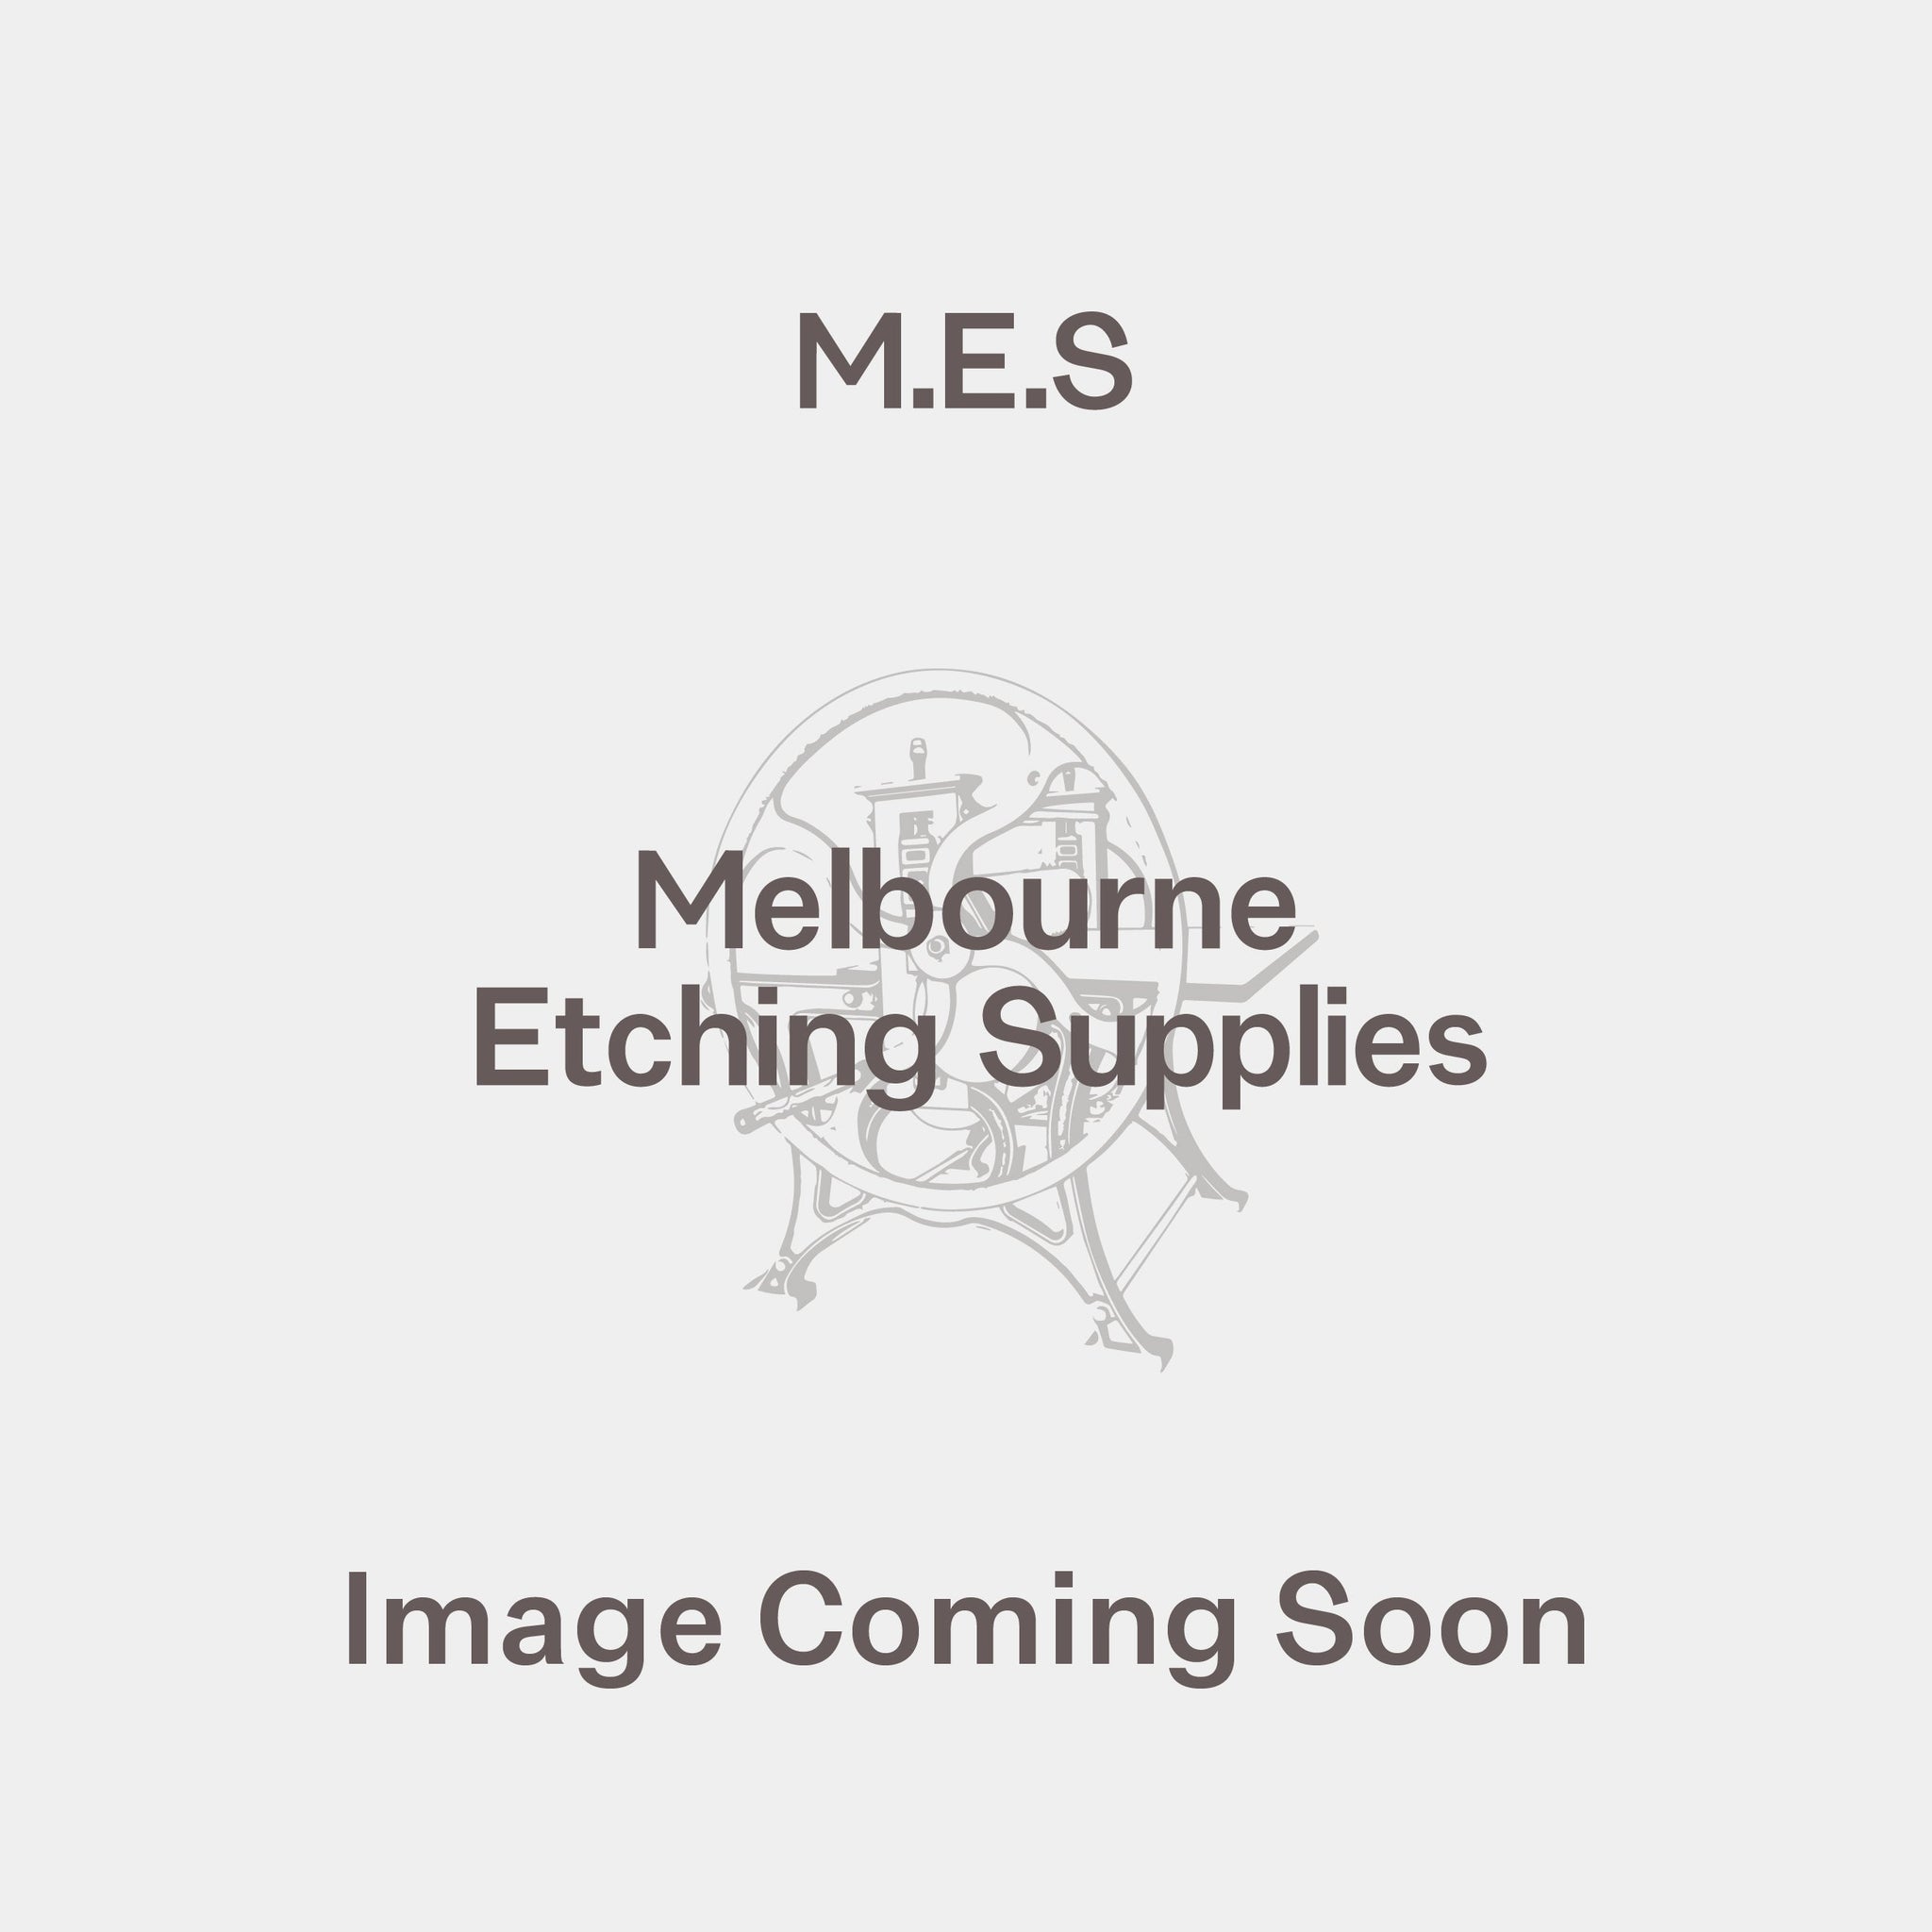 Echigo - Melbourne Etching Supplies